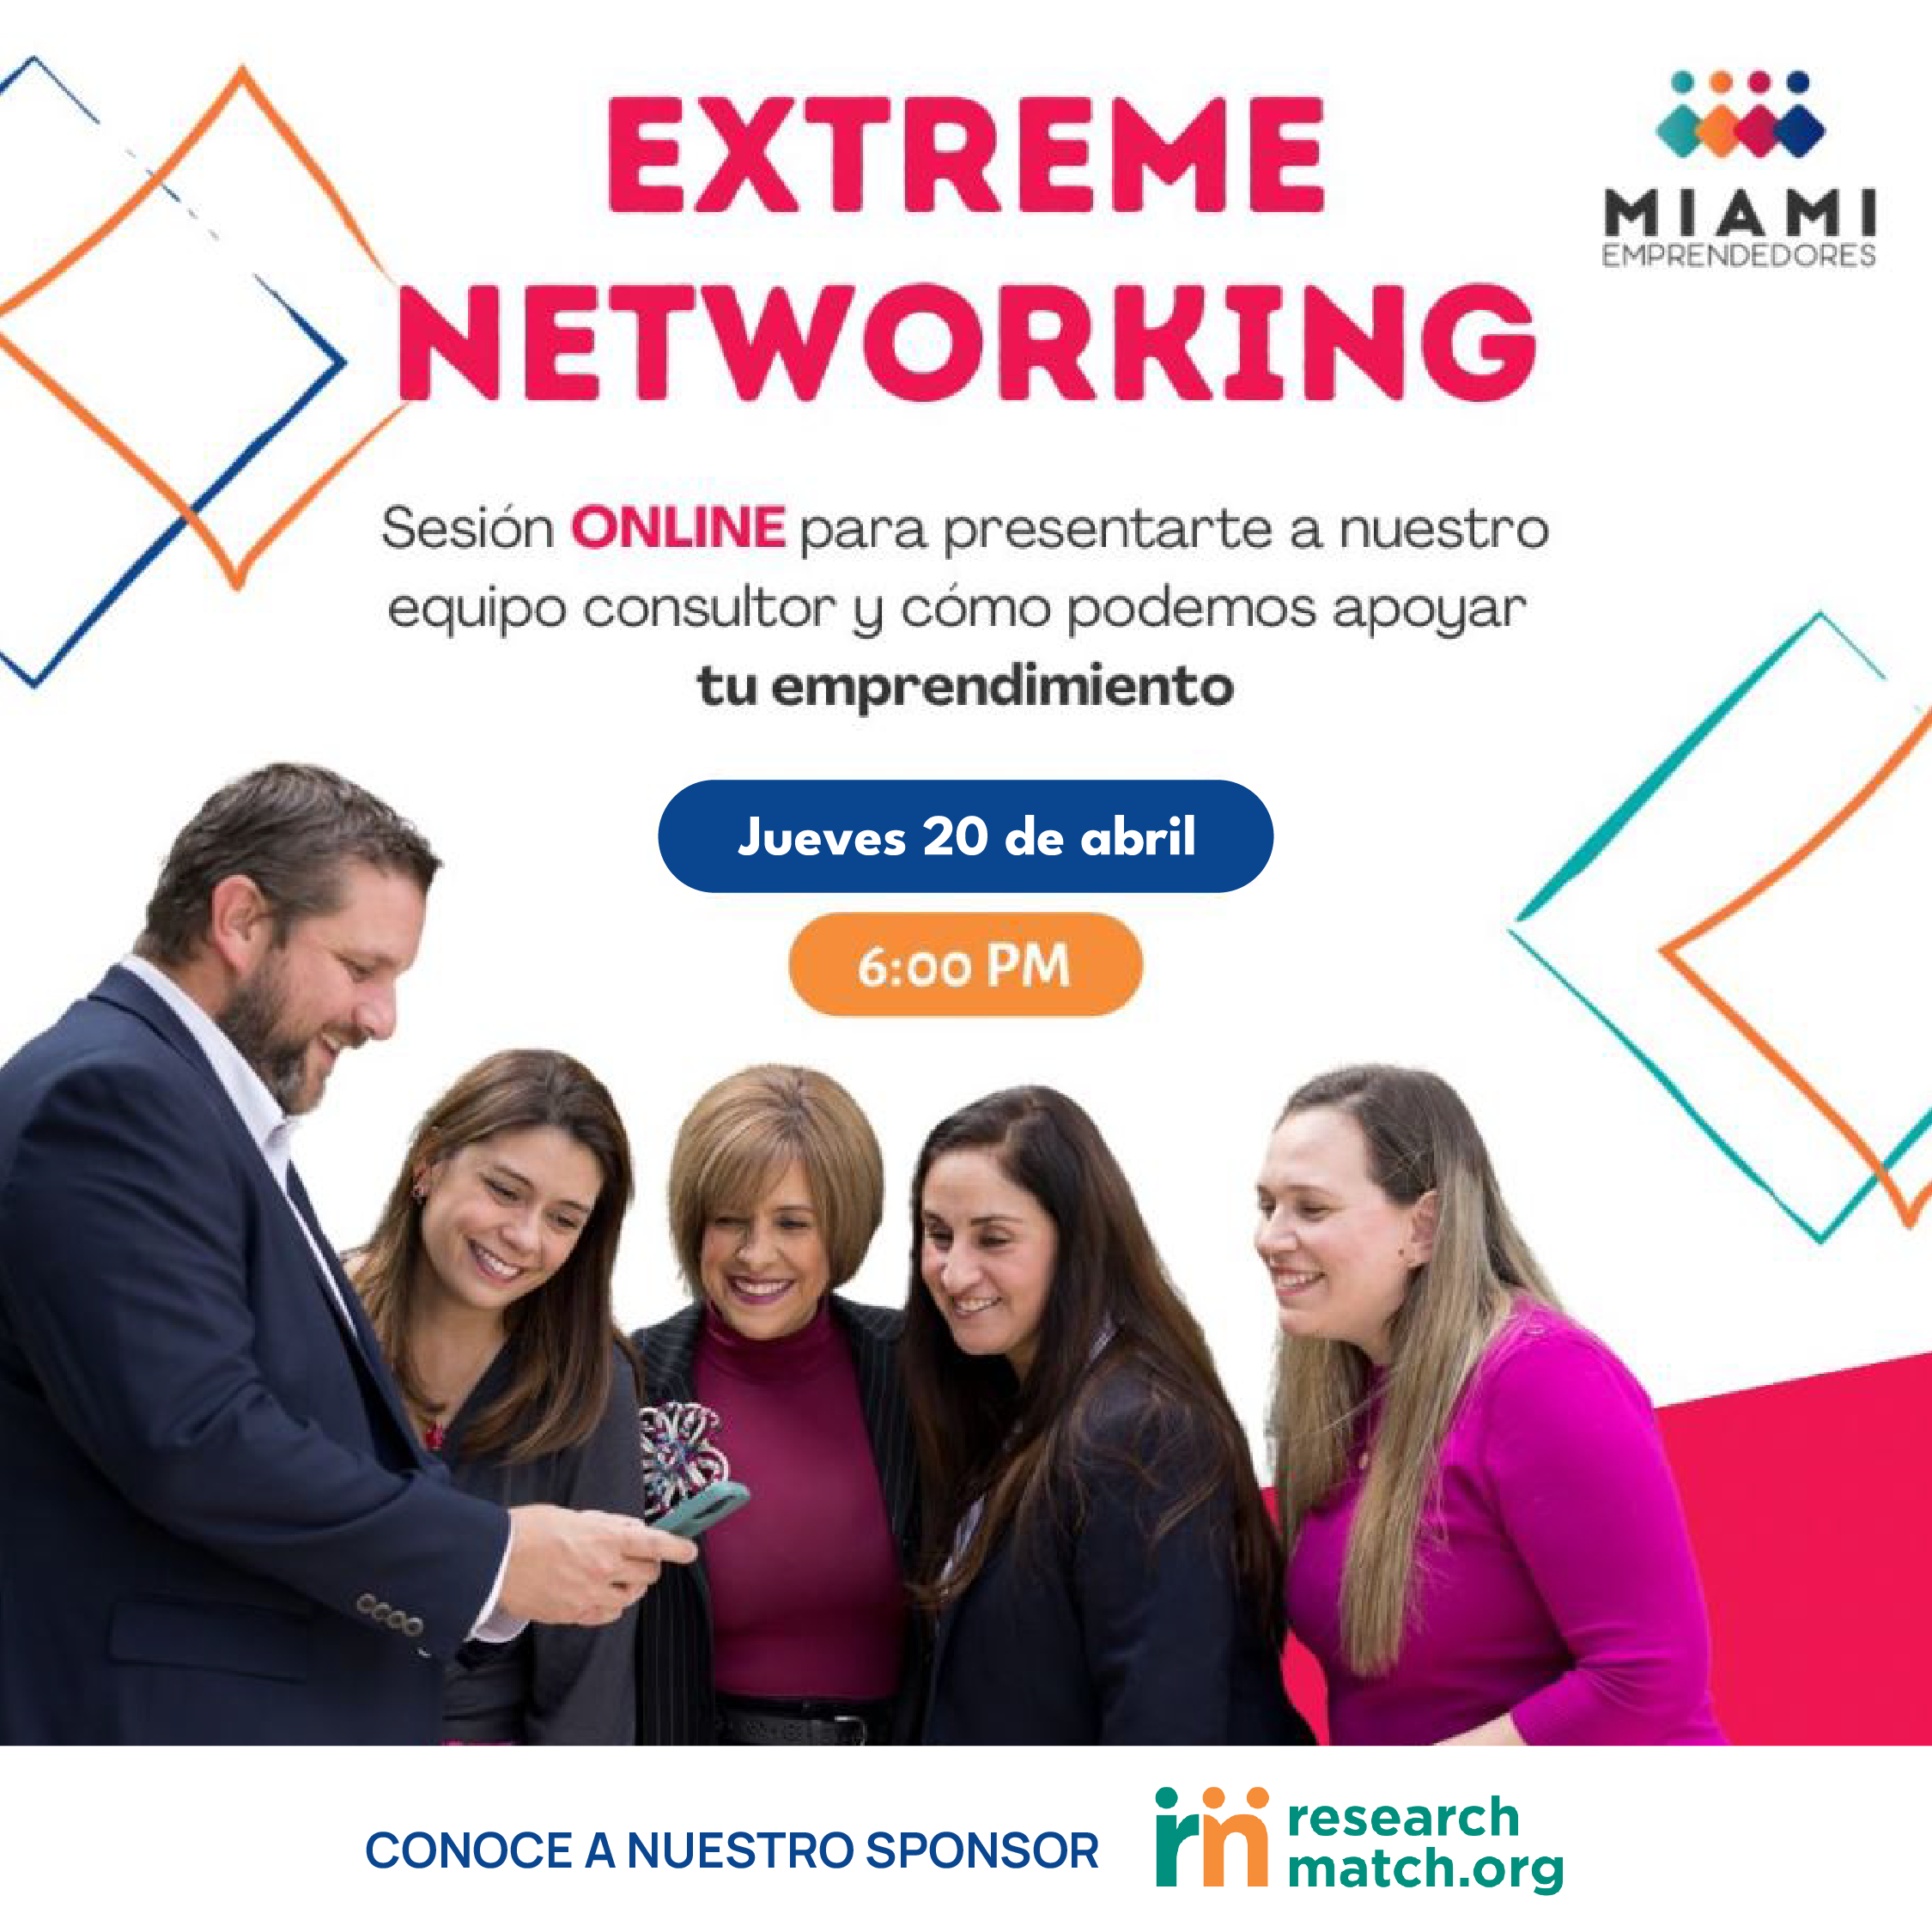 Extreme Networking: una oportunidad para conocernos cara a cara y crear sinergías positivas